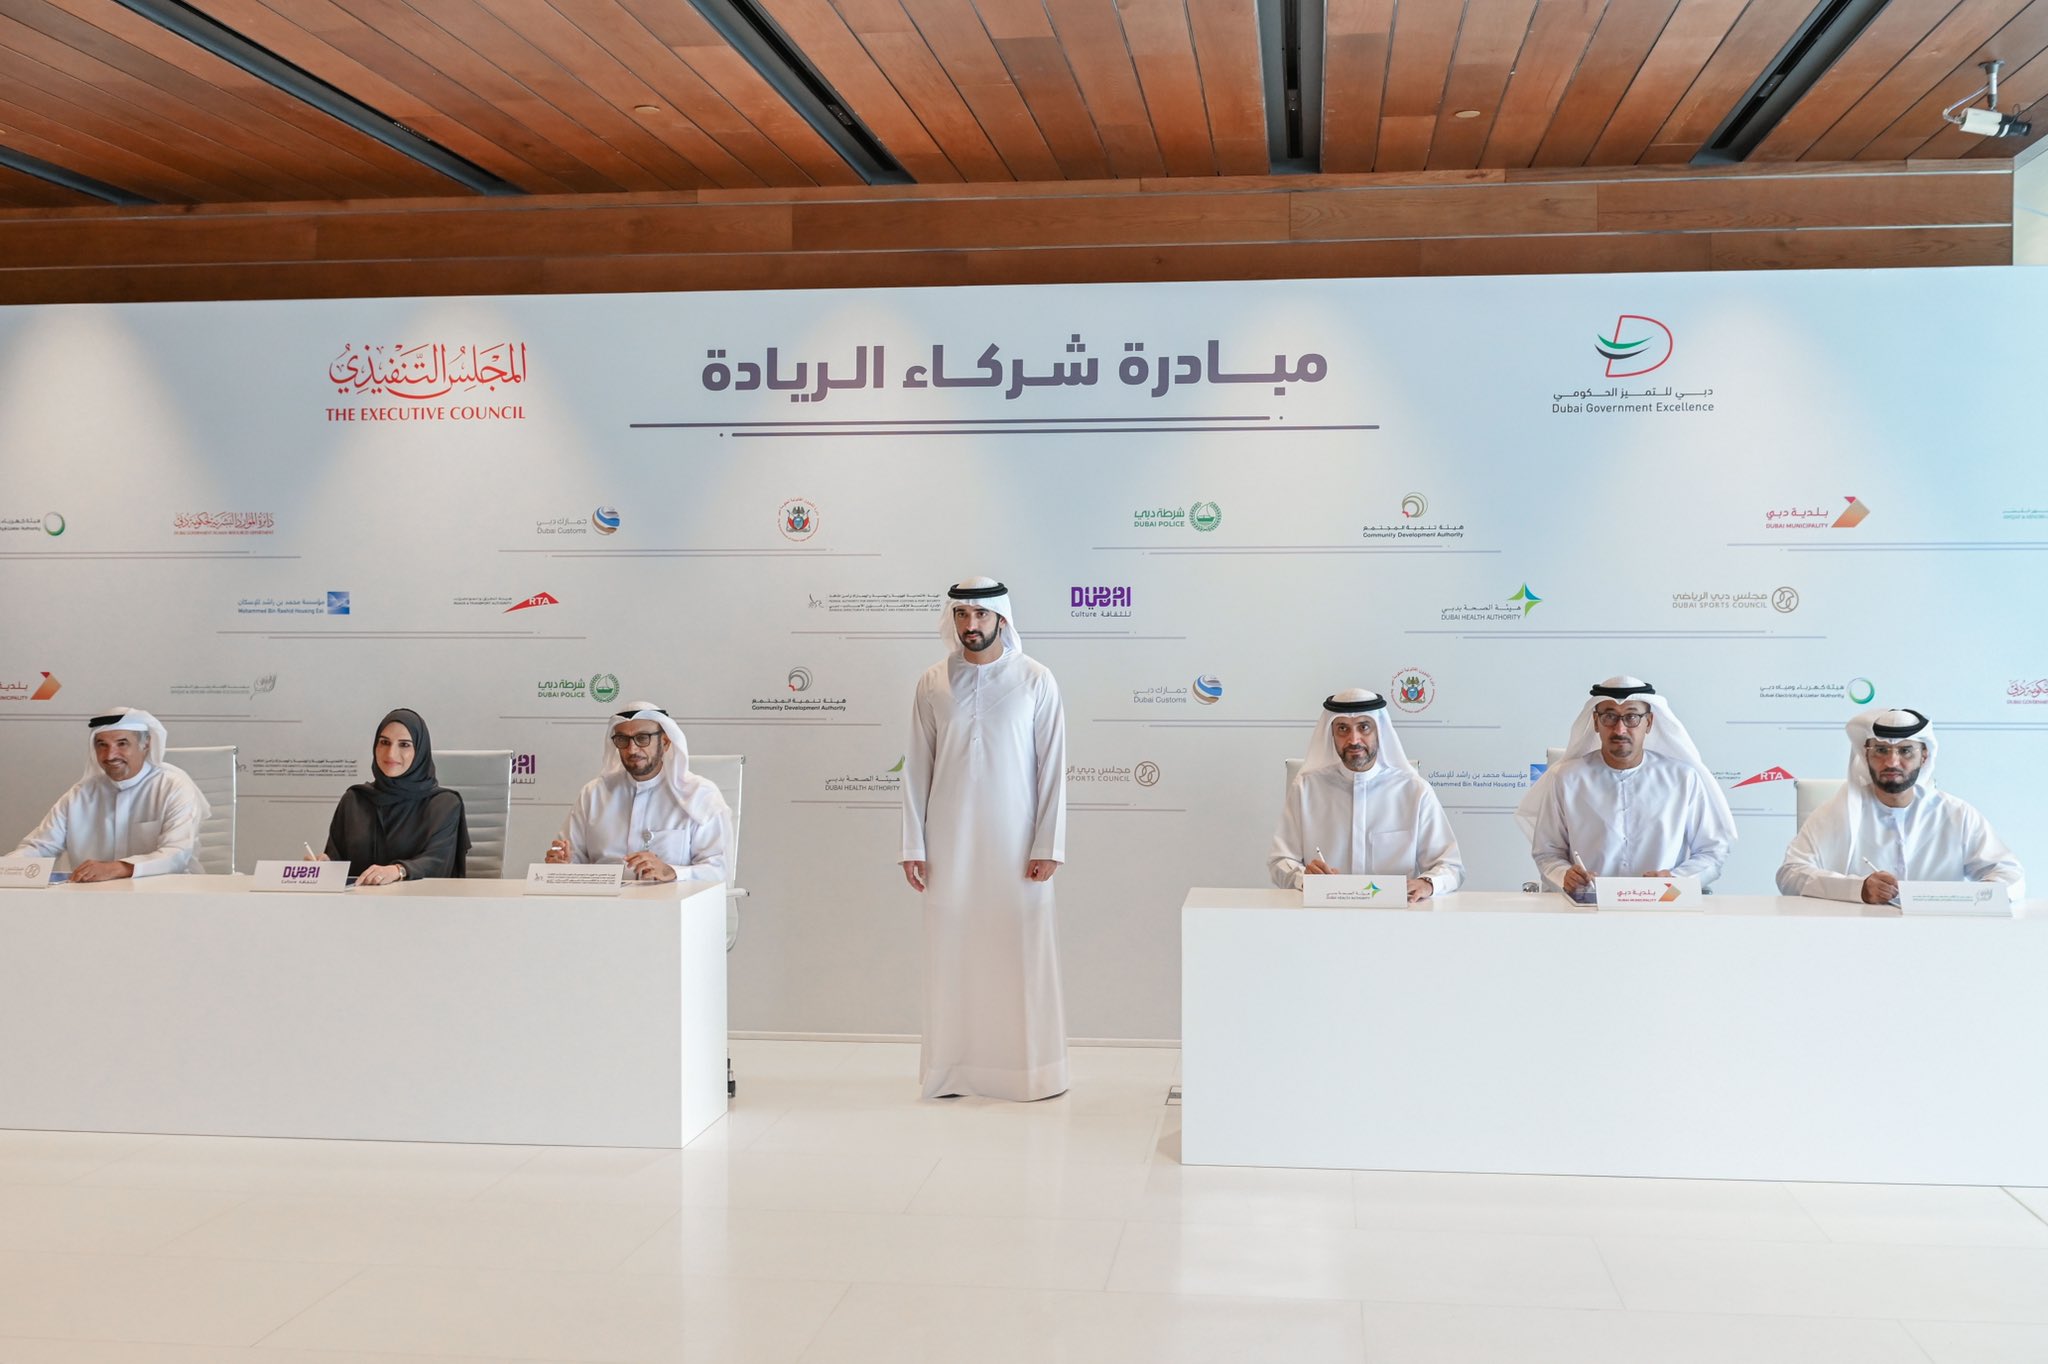 حمدان بن محمد يطلق مبادرة "شركاء الريادة" لترسيخ مكانة دبي نموذجاً عالمياً رائداً في الخدمات الحكومية